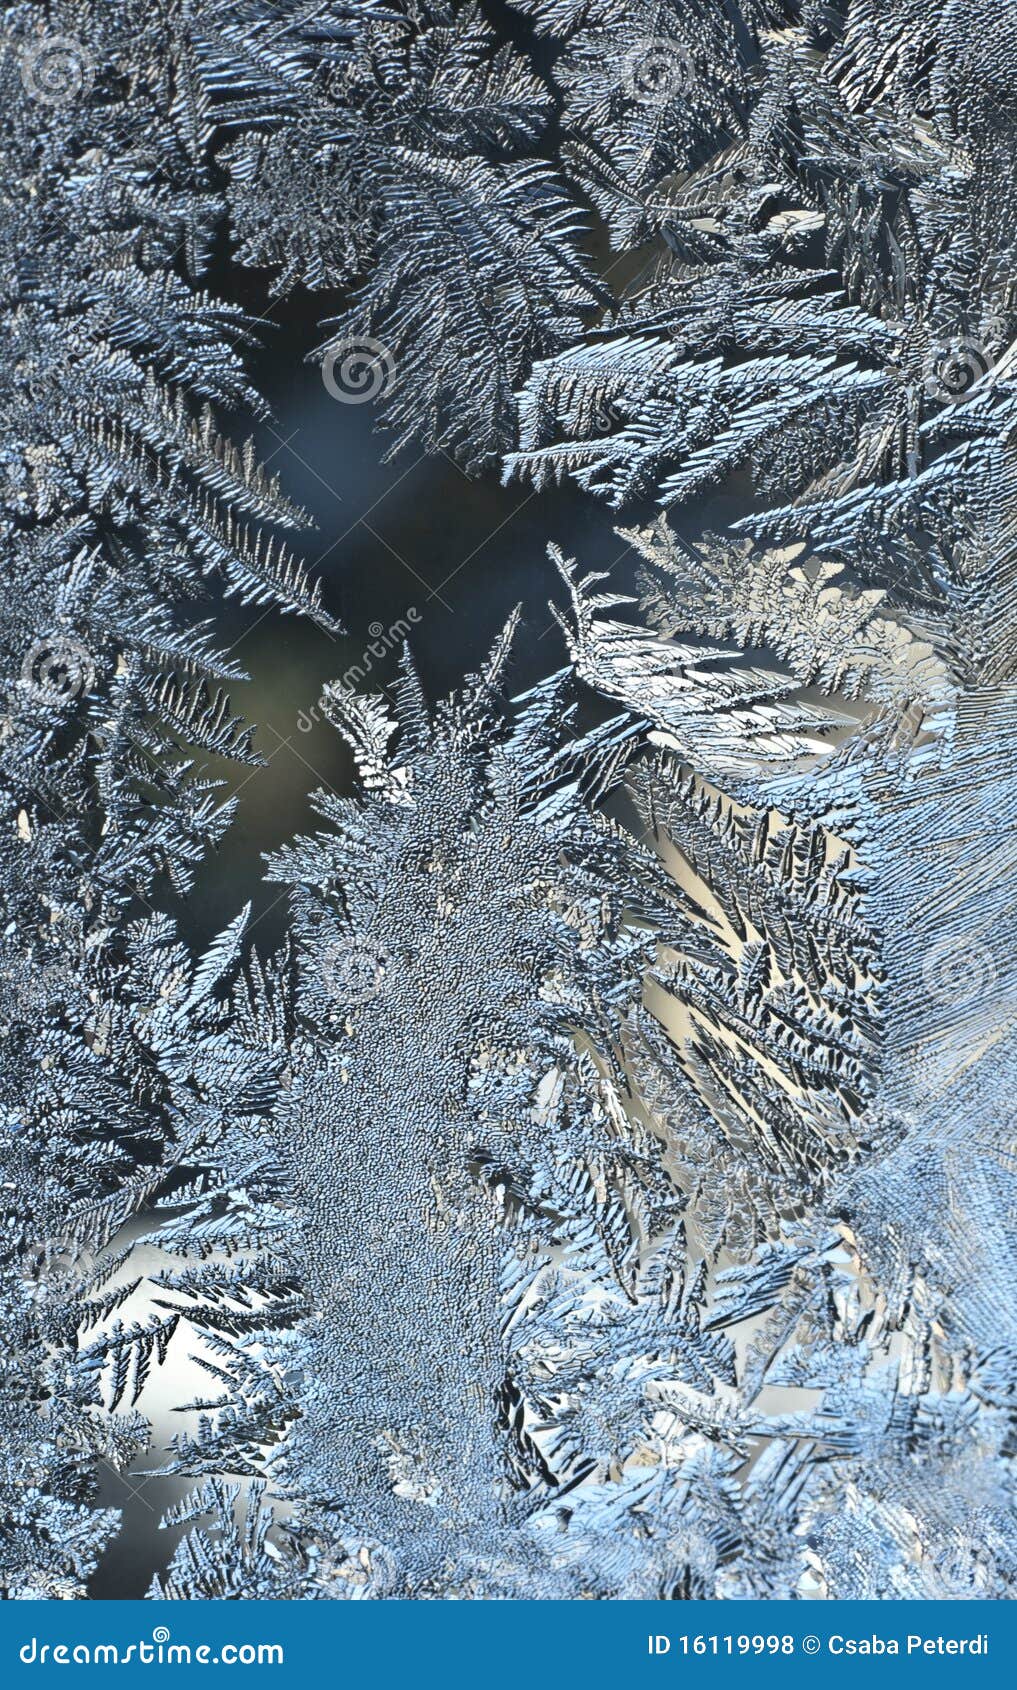 frost-work on a window